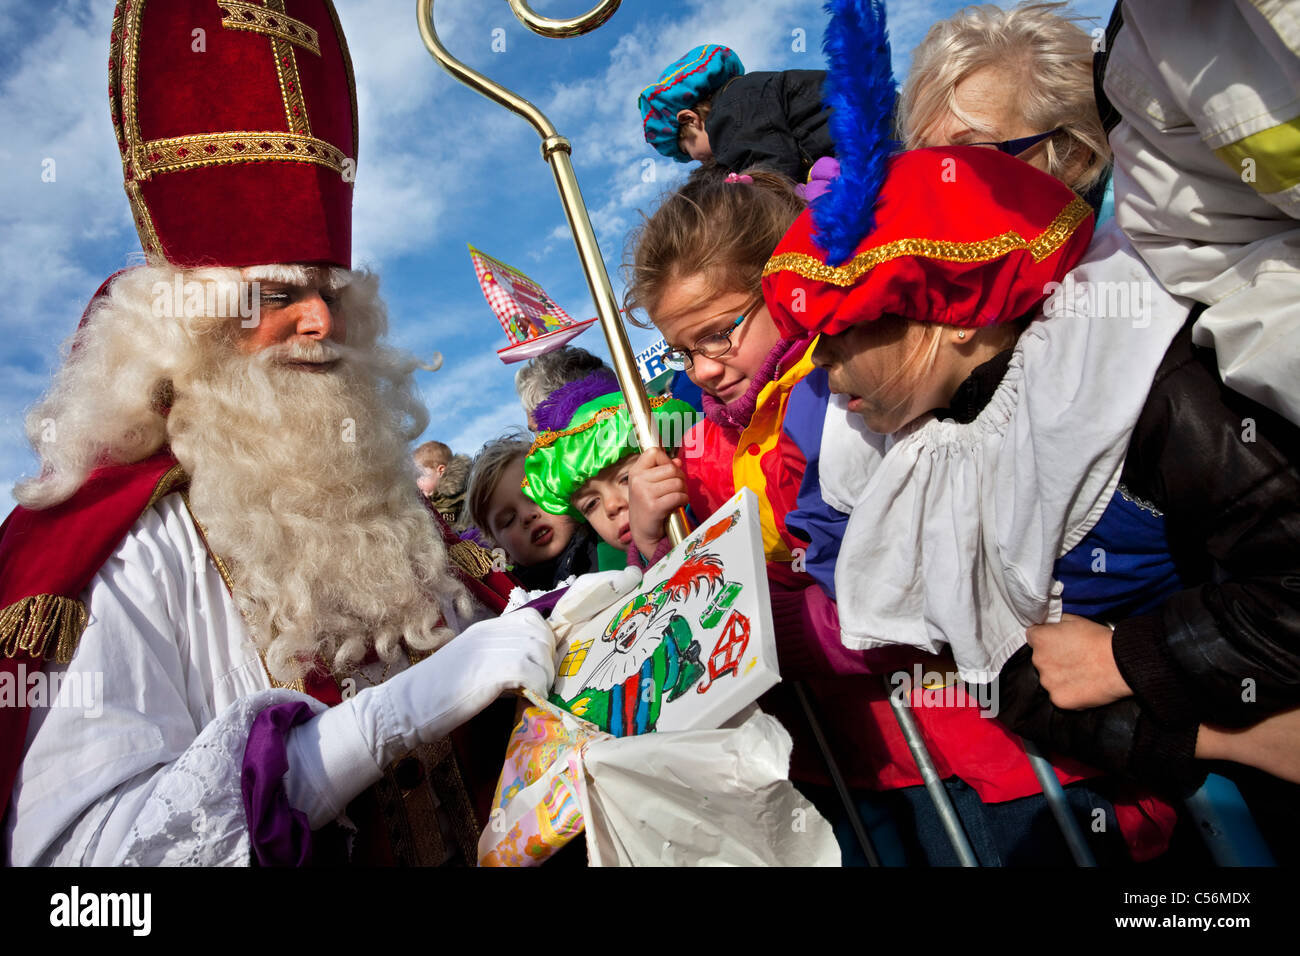 Den Niederlanden, Loosdrecht, Festival des Sinterklaas oder Sint Nicolaas, jährlich am Vorabend der Nikolaus am 5. Dezember gefeiert. Stockfoto